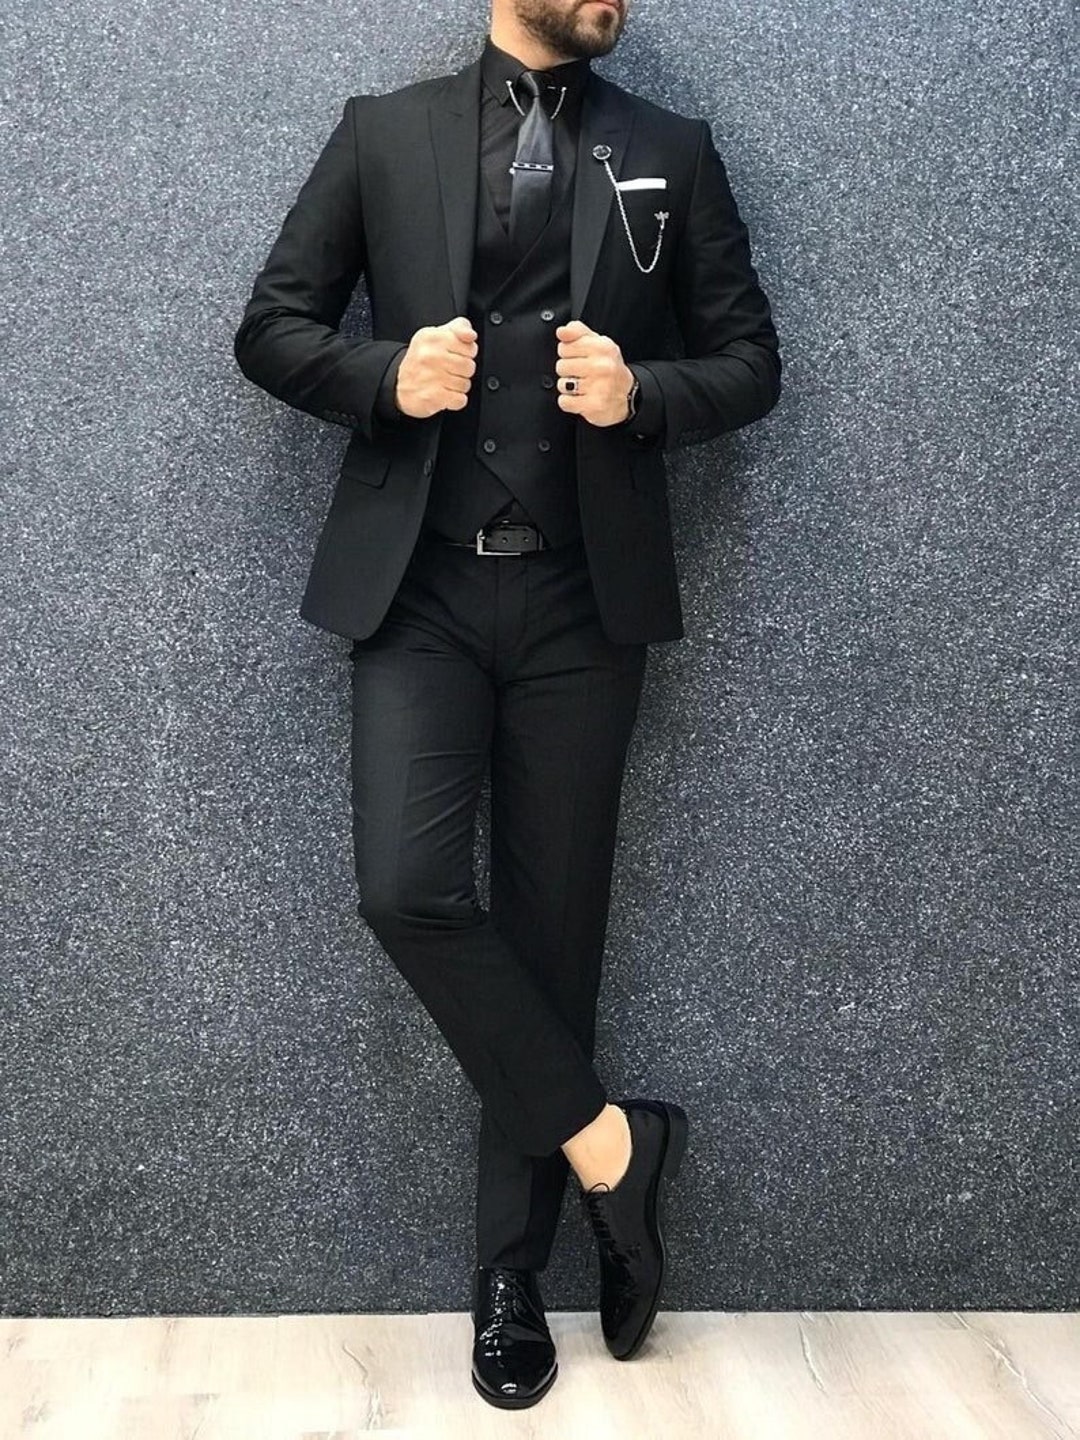 Men Suits Black 3 Piece Formal Fashion Slim Fit Wedding Suit Party Wear ...